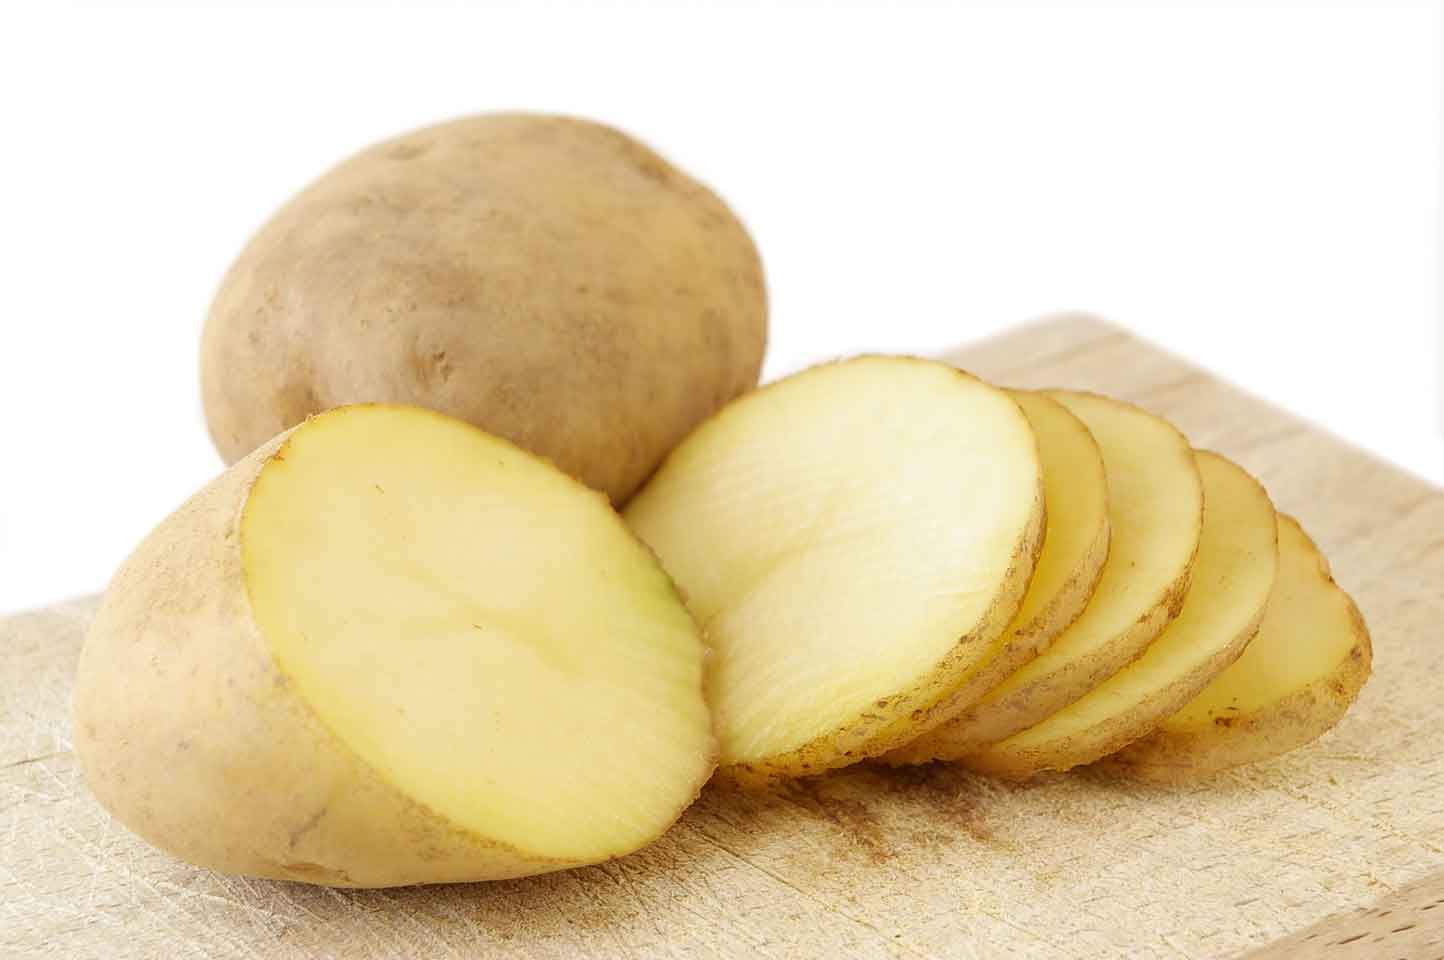 Để chống lão hoá hiệu quả bạn hãy sử dụng nước ép khoai tây thay vì khoai tây nghiền.